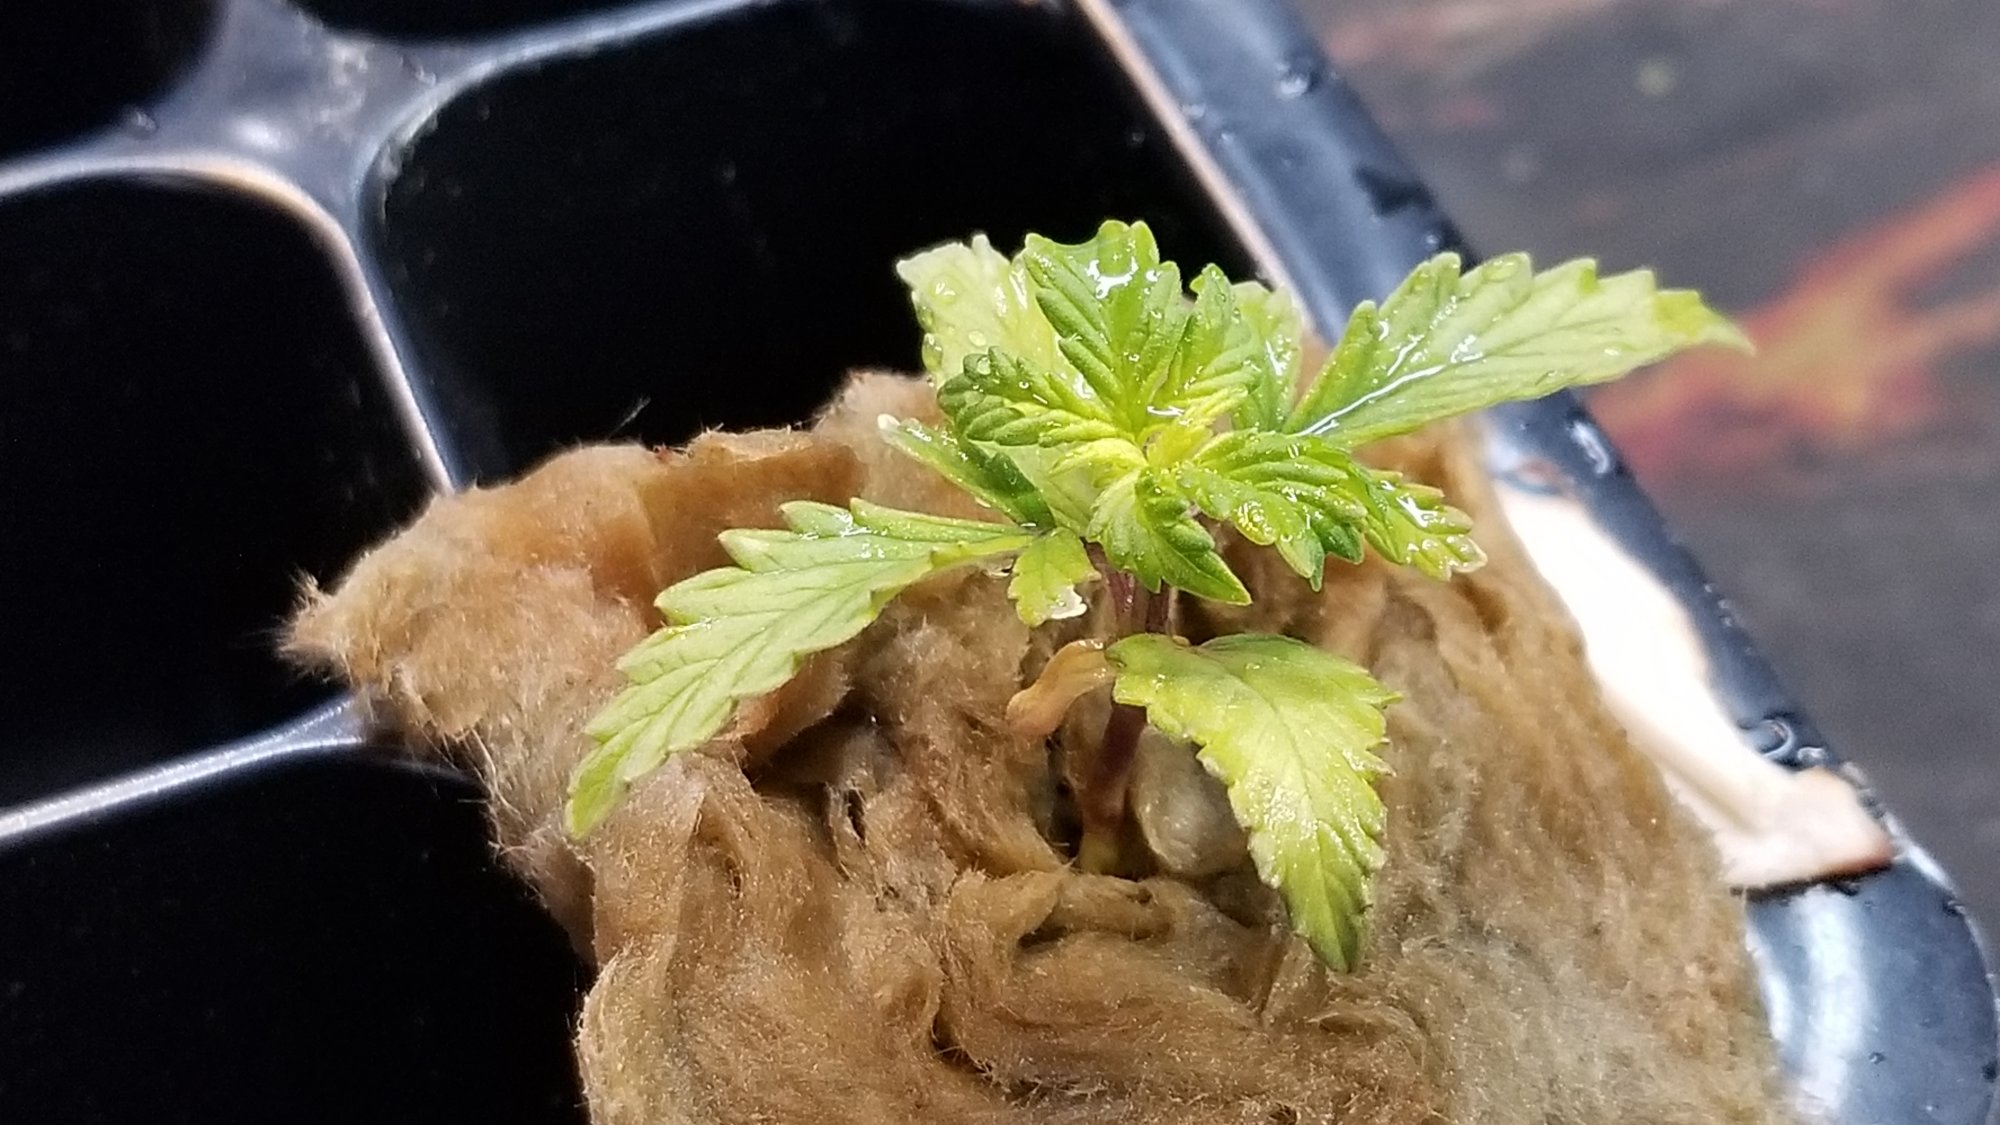 My first autoflower hydroponics grow 8